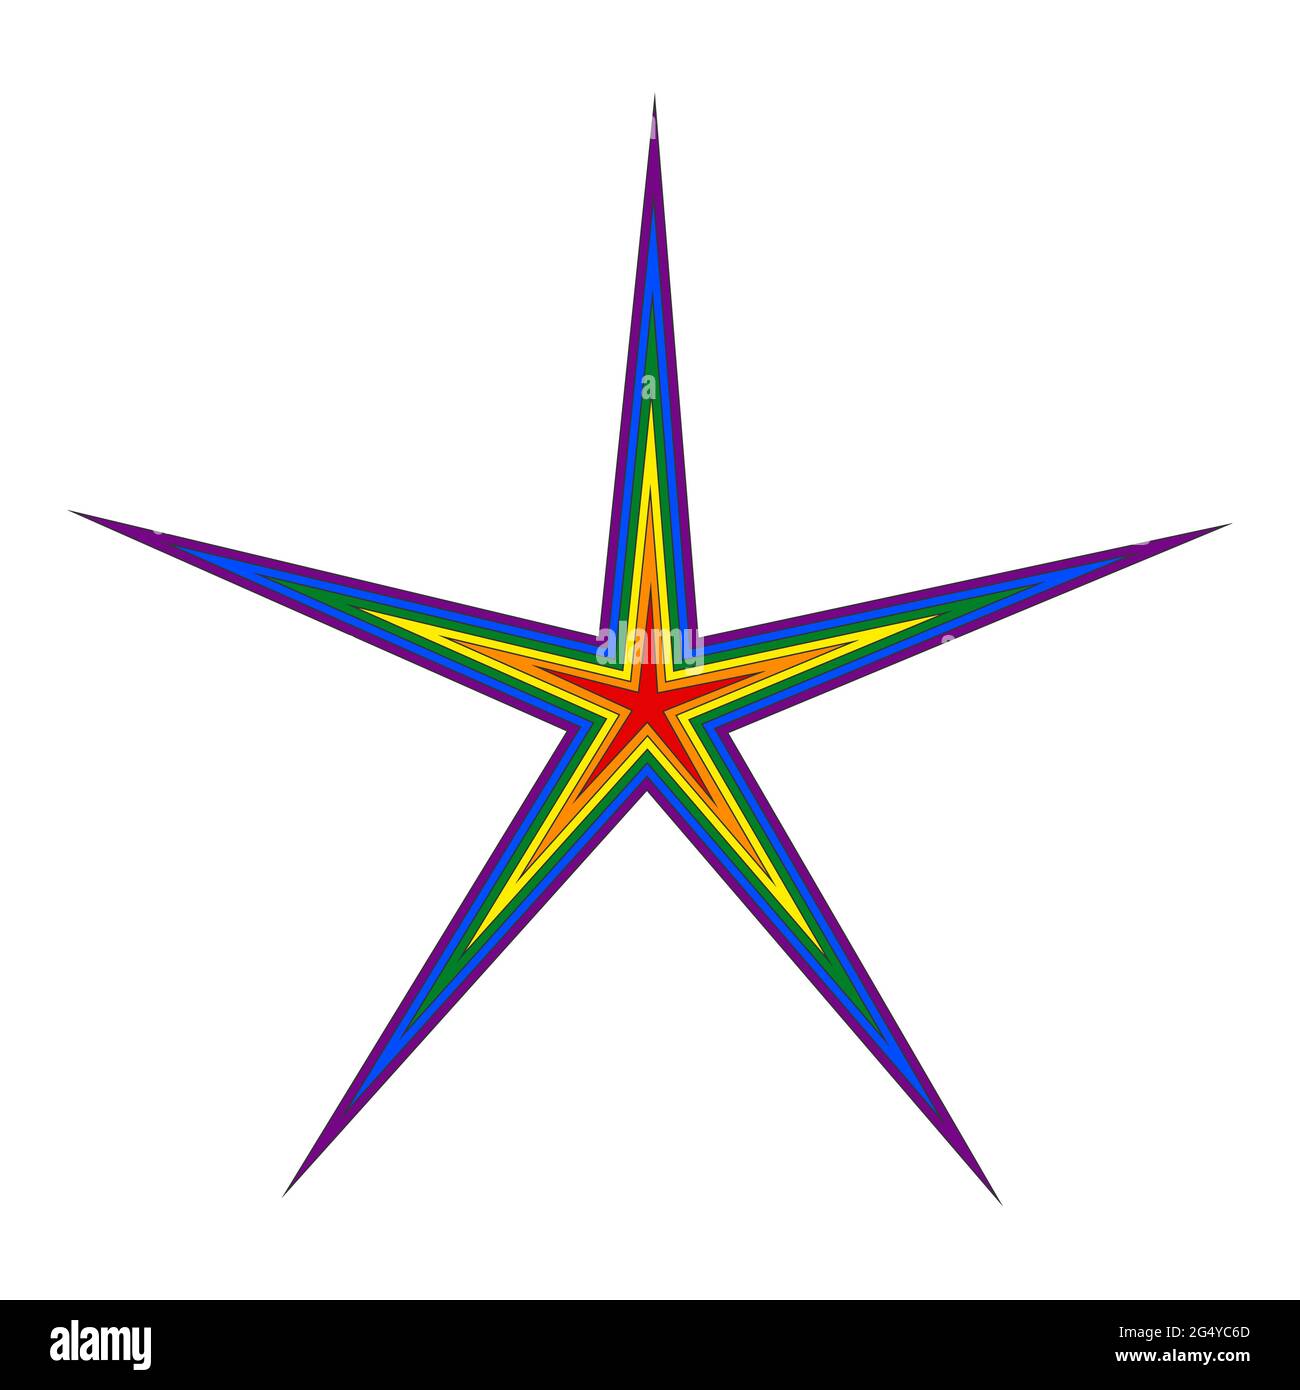 Der fünfzackige Stern ist auf weißem Grund rot, orange, gelb, grün, blau und lila gefärbt. LGBT-Symbolik. Stock Vektor